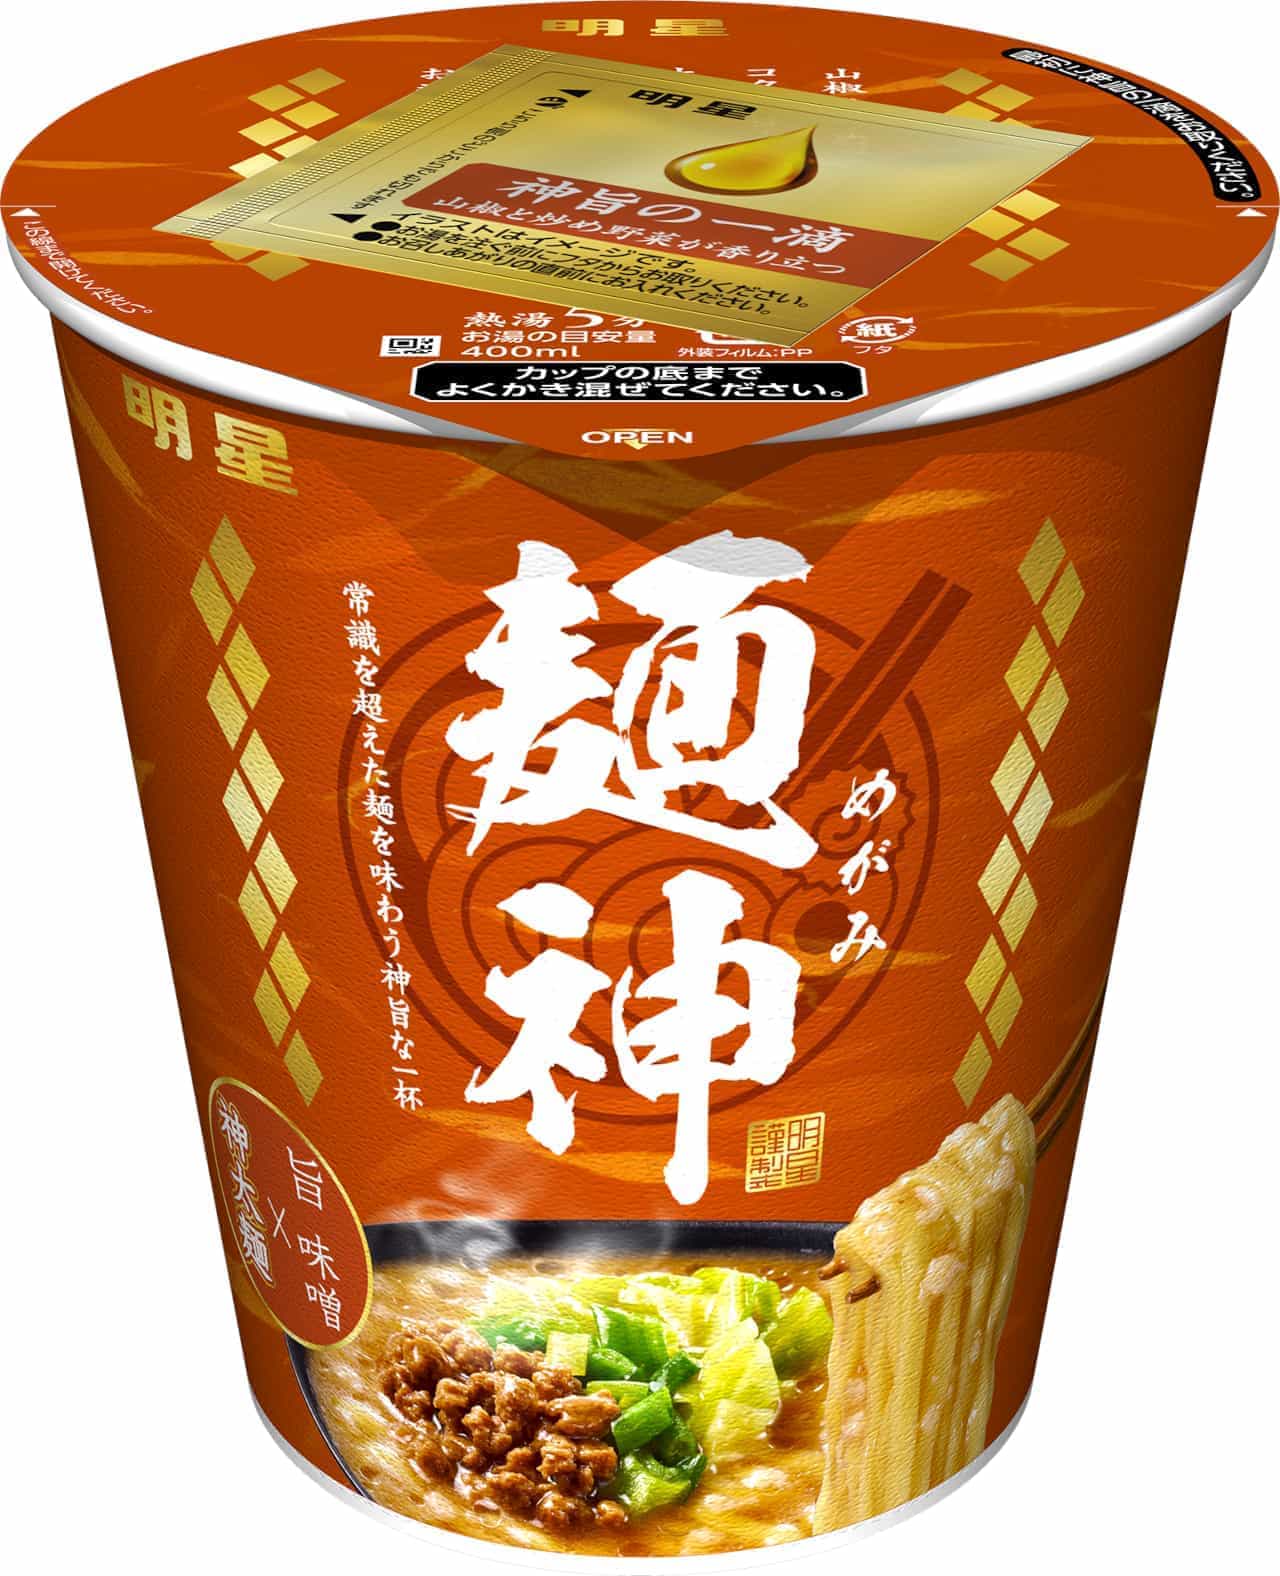 「明星 麺神カップ 神太麺×旨 味噌」超濃厚な味噌スープに超極太麺